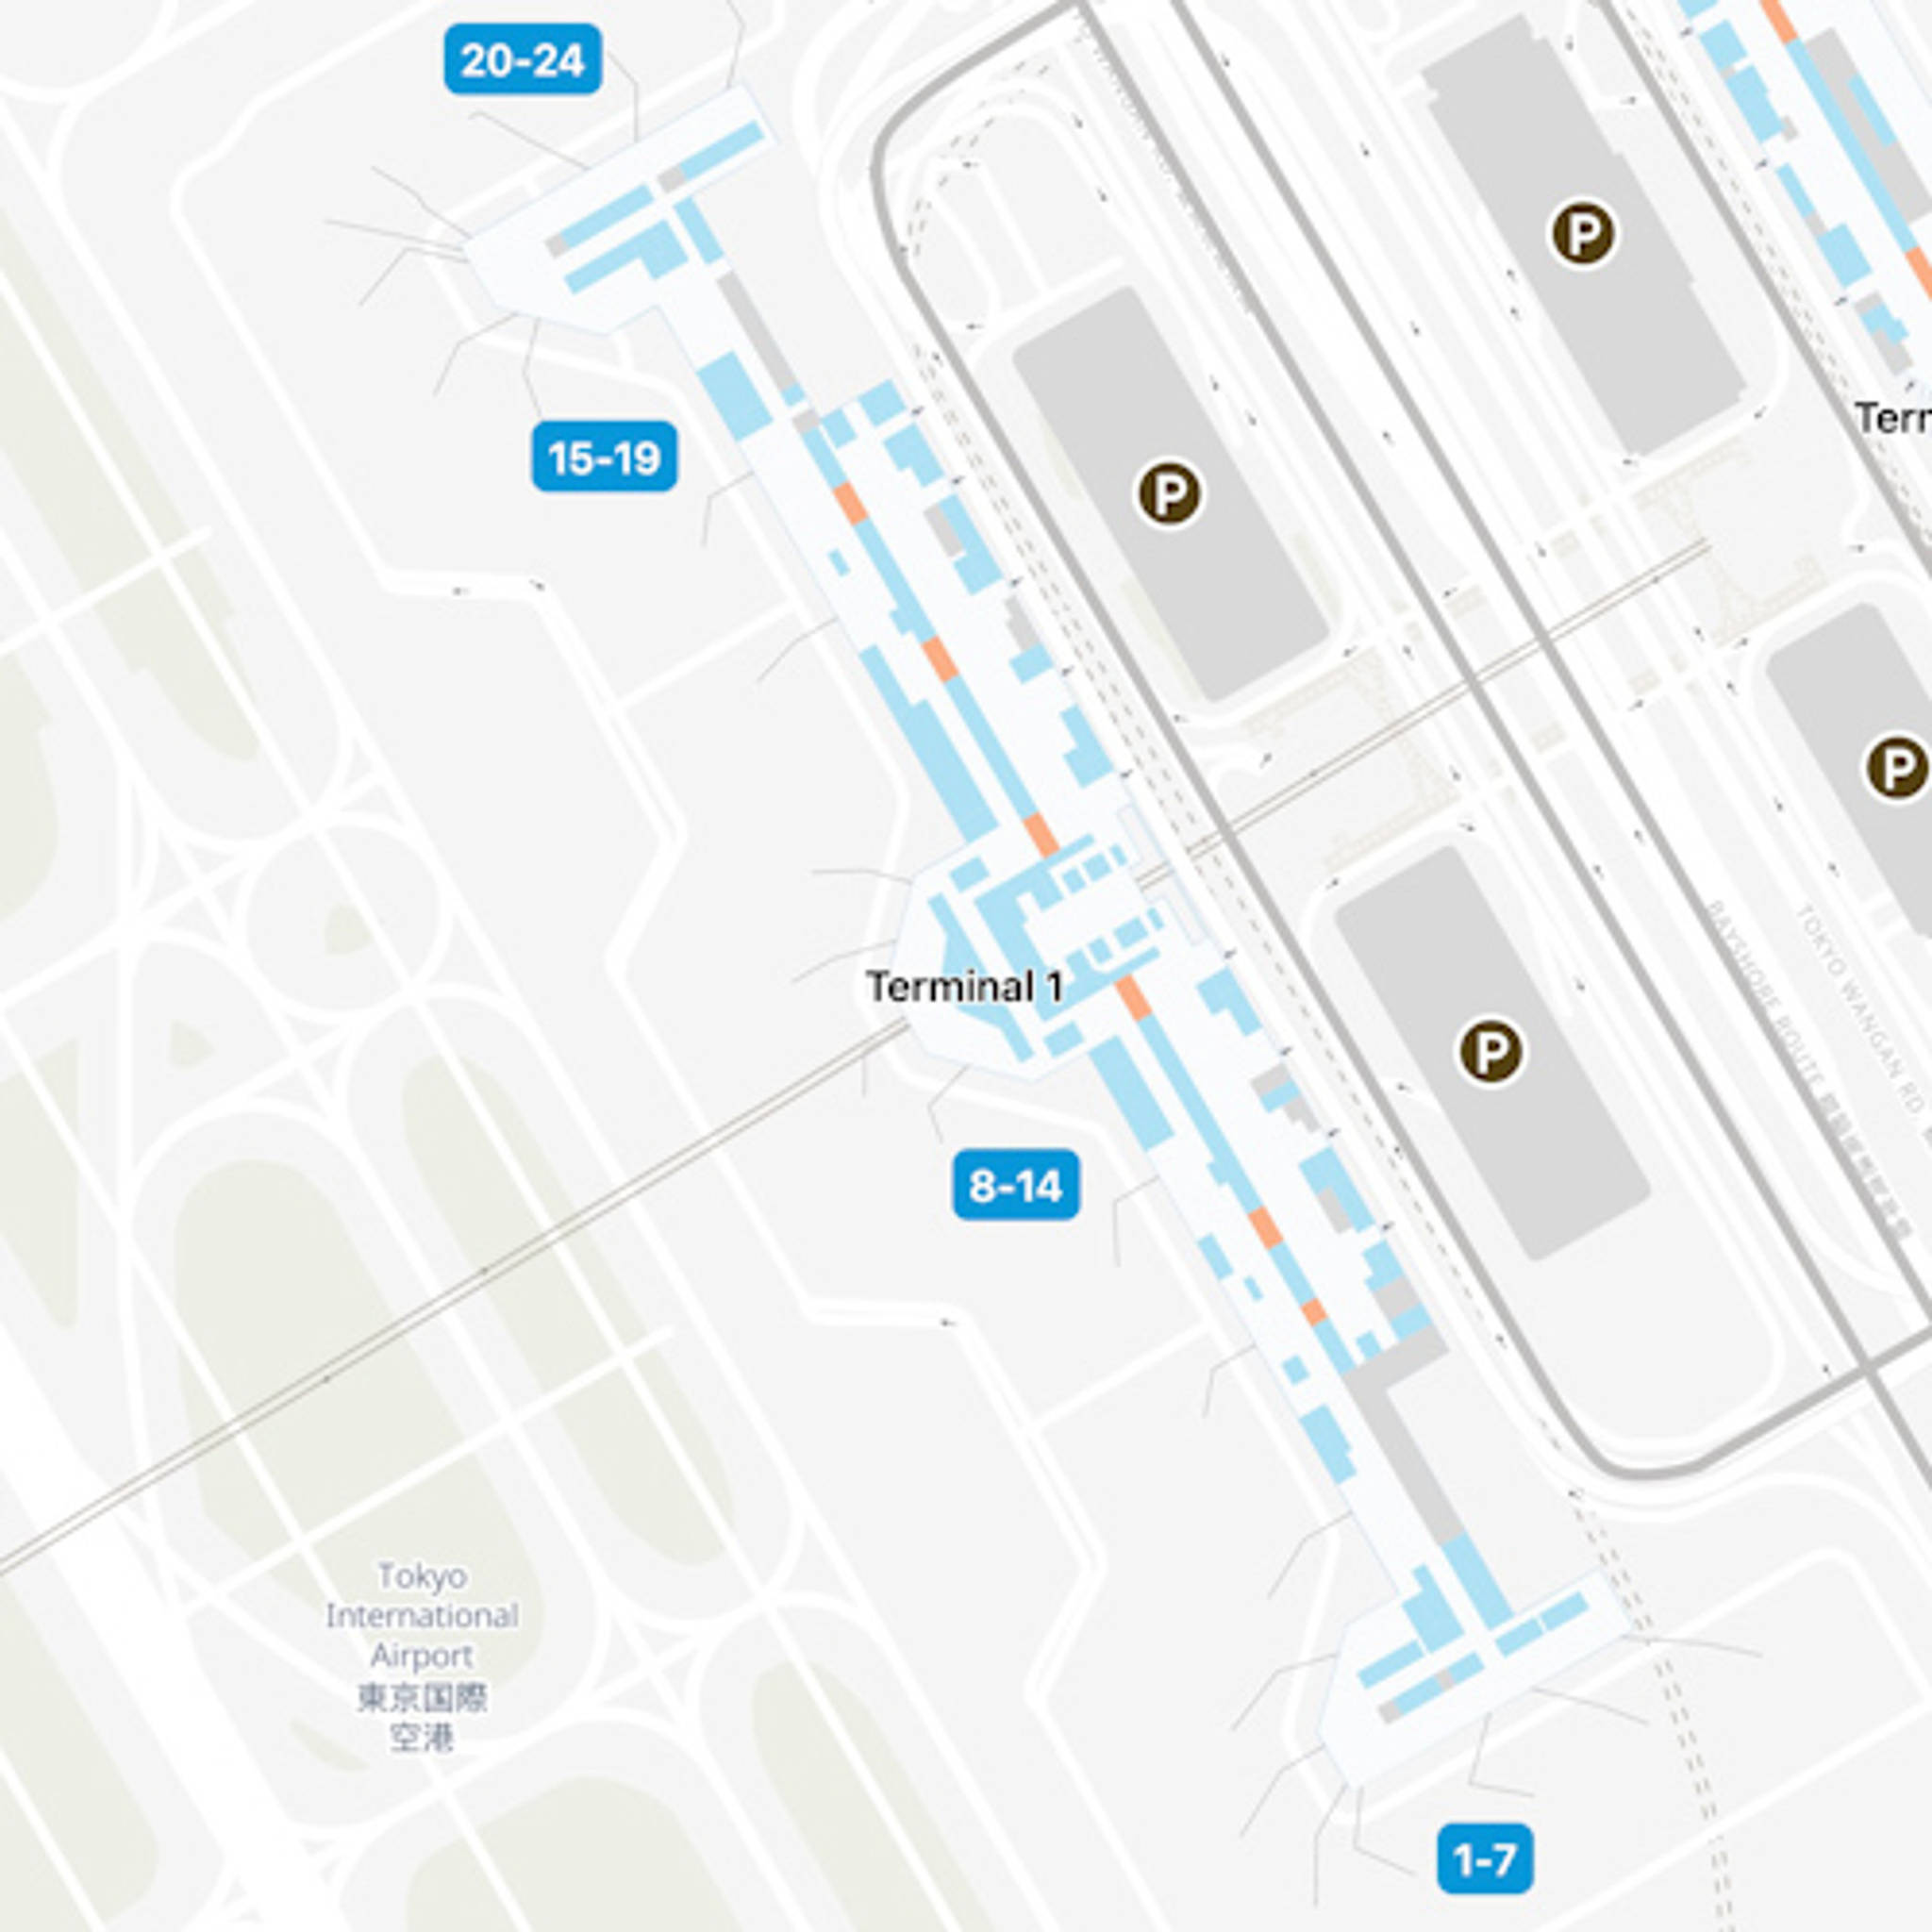 Tokyo Haneda Airport HND Terminal 1 Map